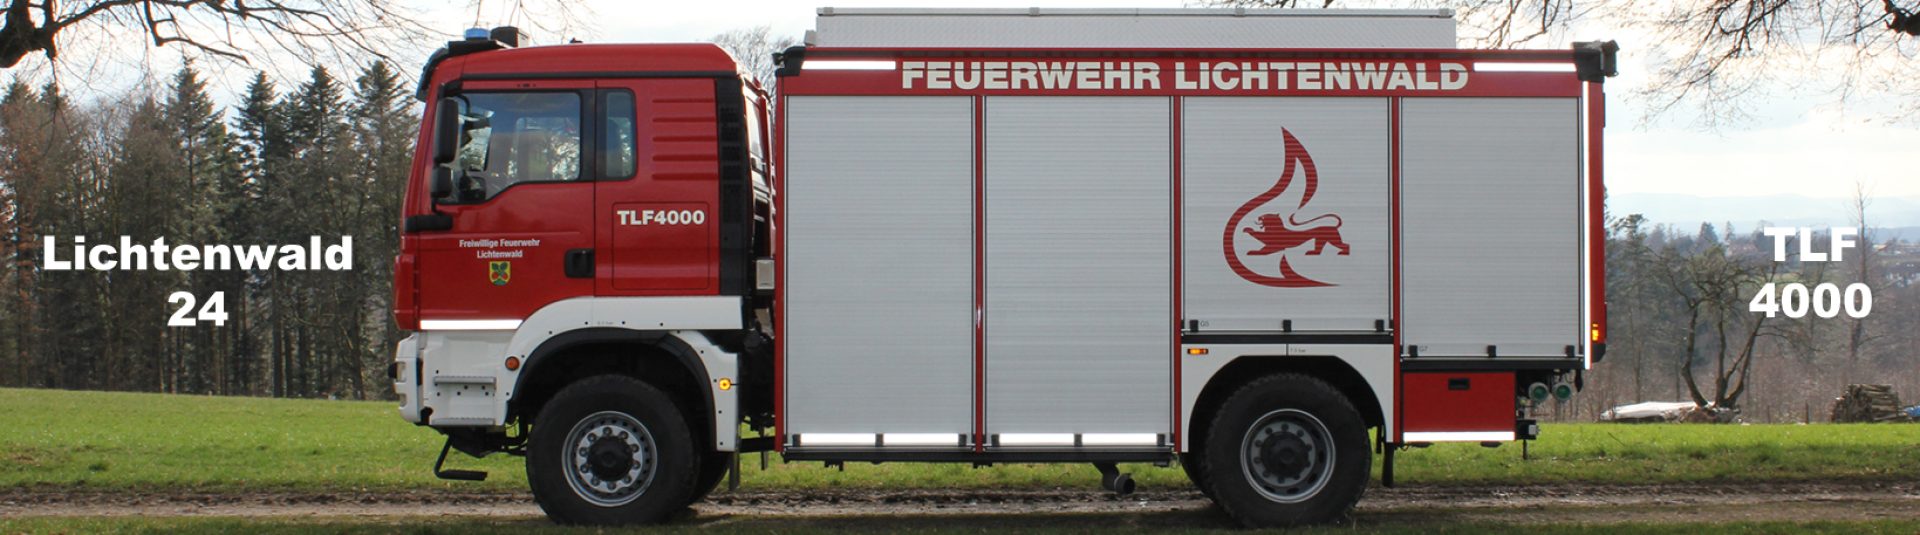 Freiwillige Feuerwehr Lichtenwald